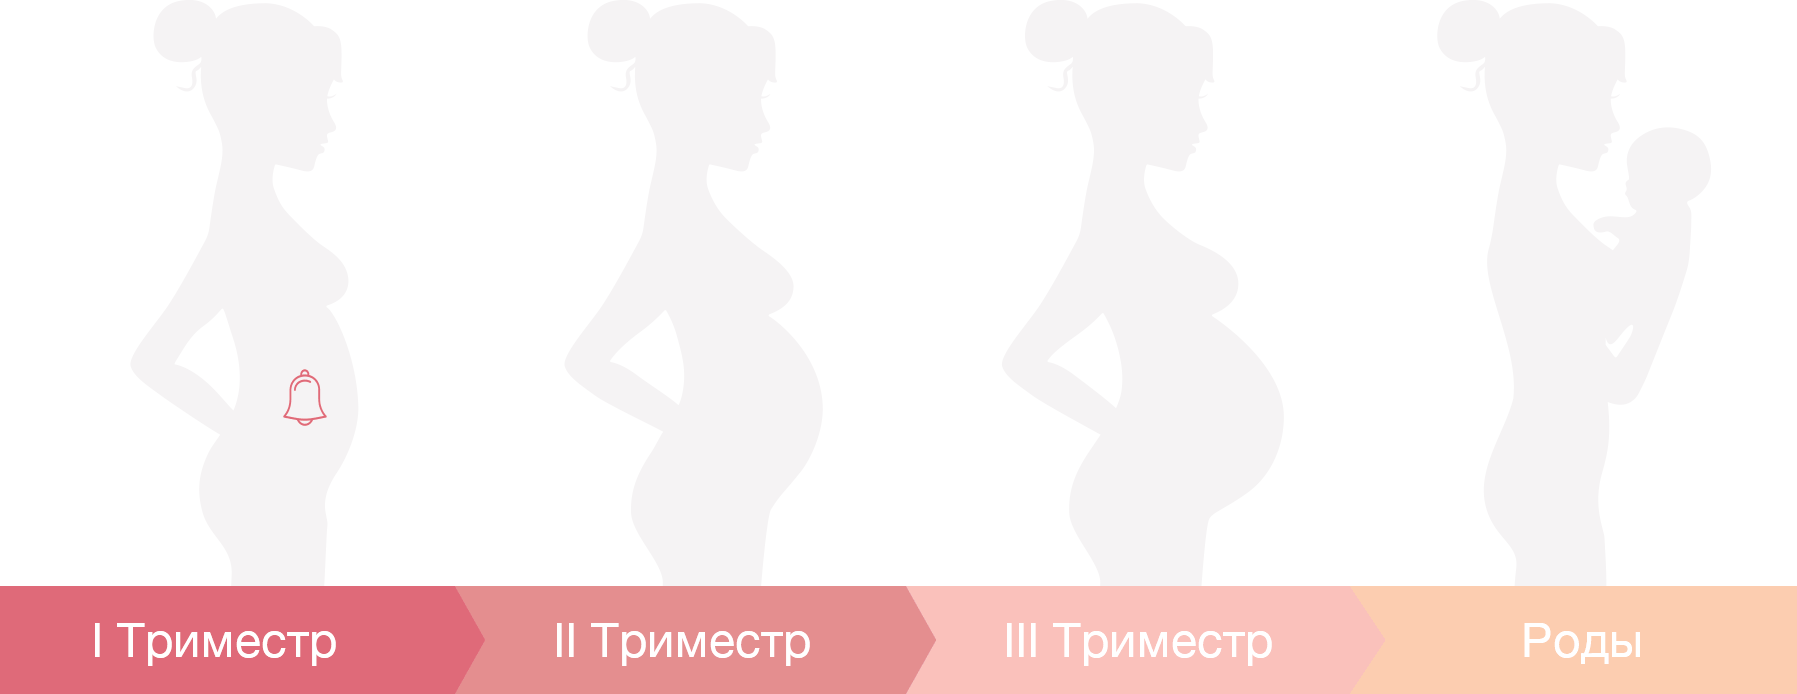 увеличивается ли грудь при первом месяце беременности фото 102